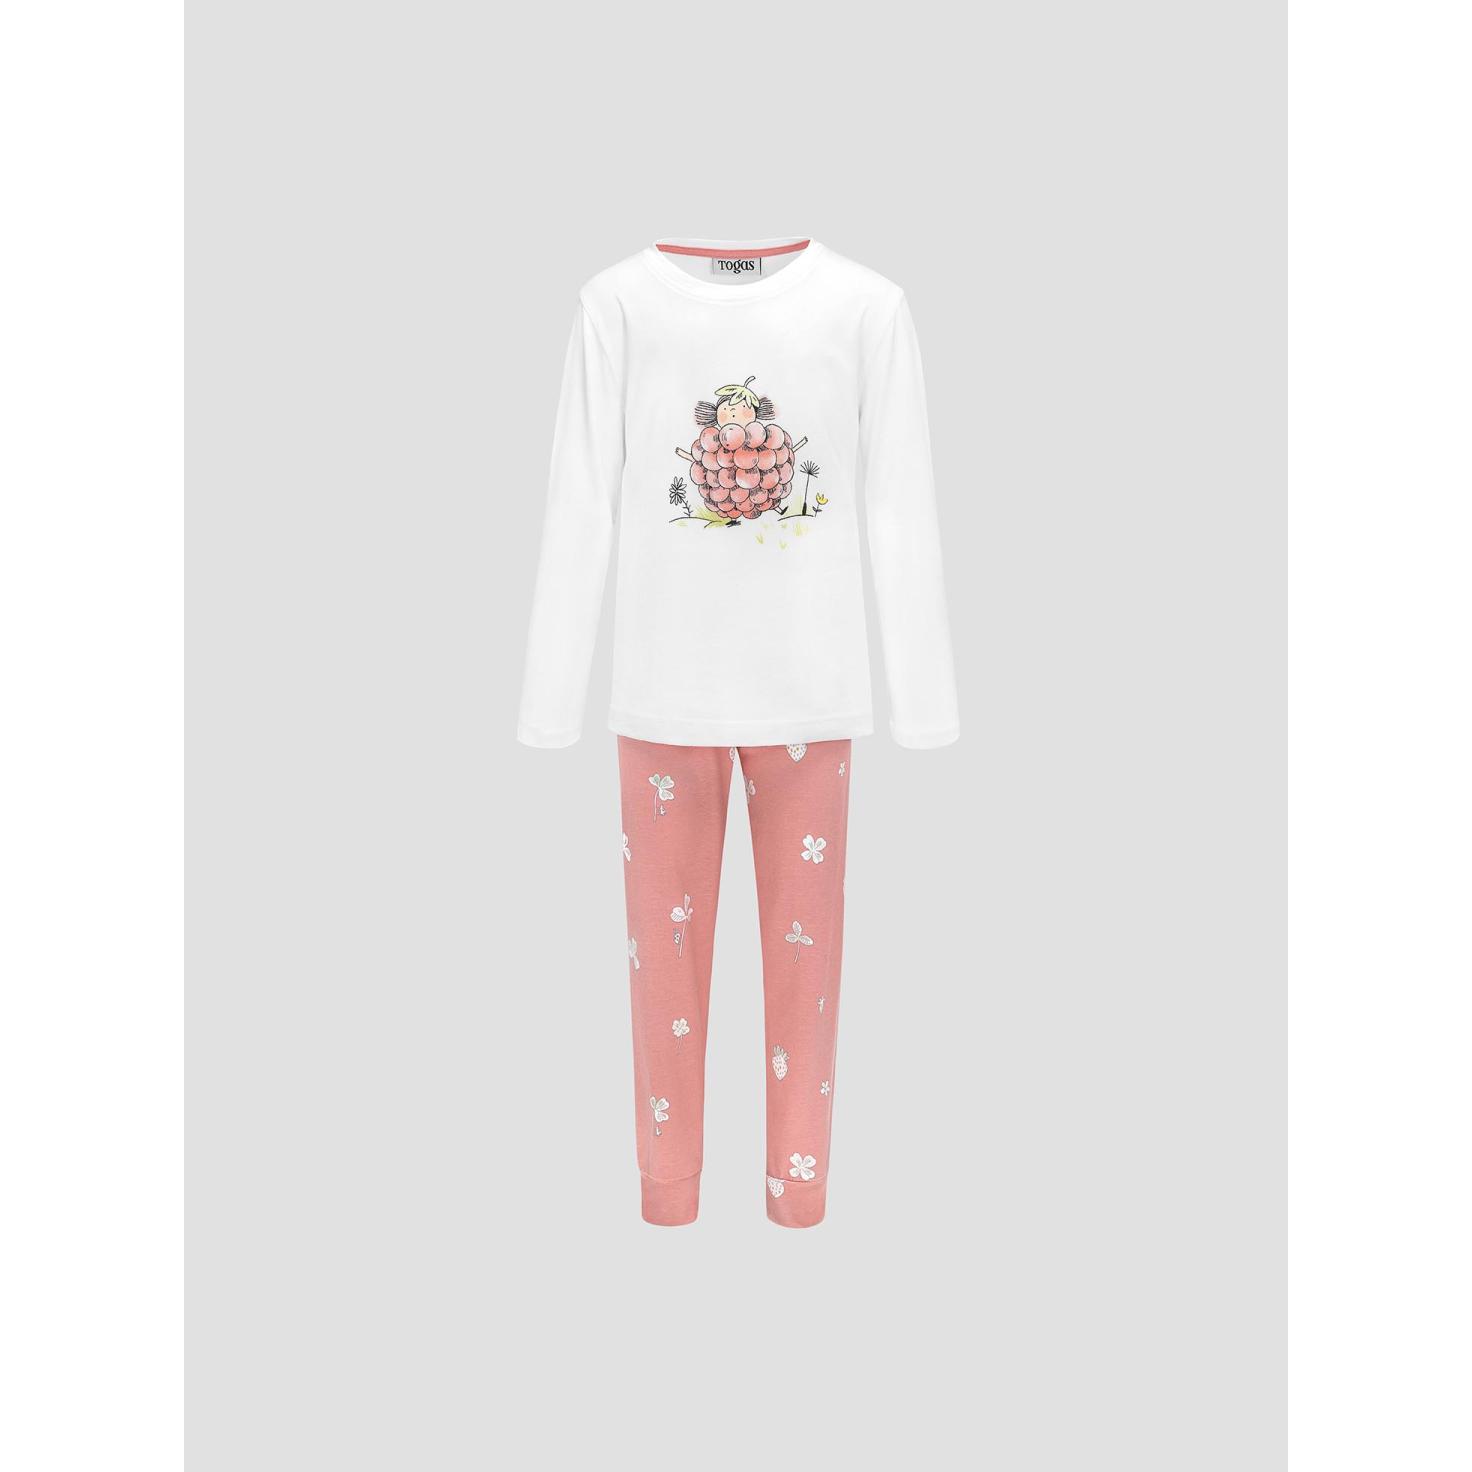 Пижама для девочек Kids by togas Стробби бело-розовый 128-134 см пижама для девочек kids by togas стробби бело розовый 116 122 см